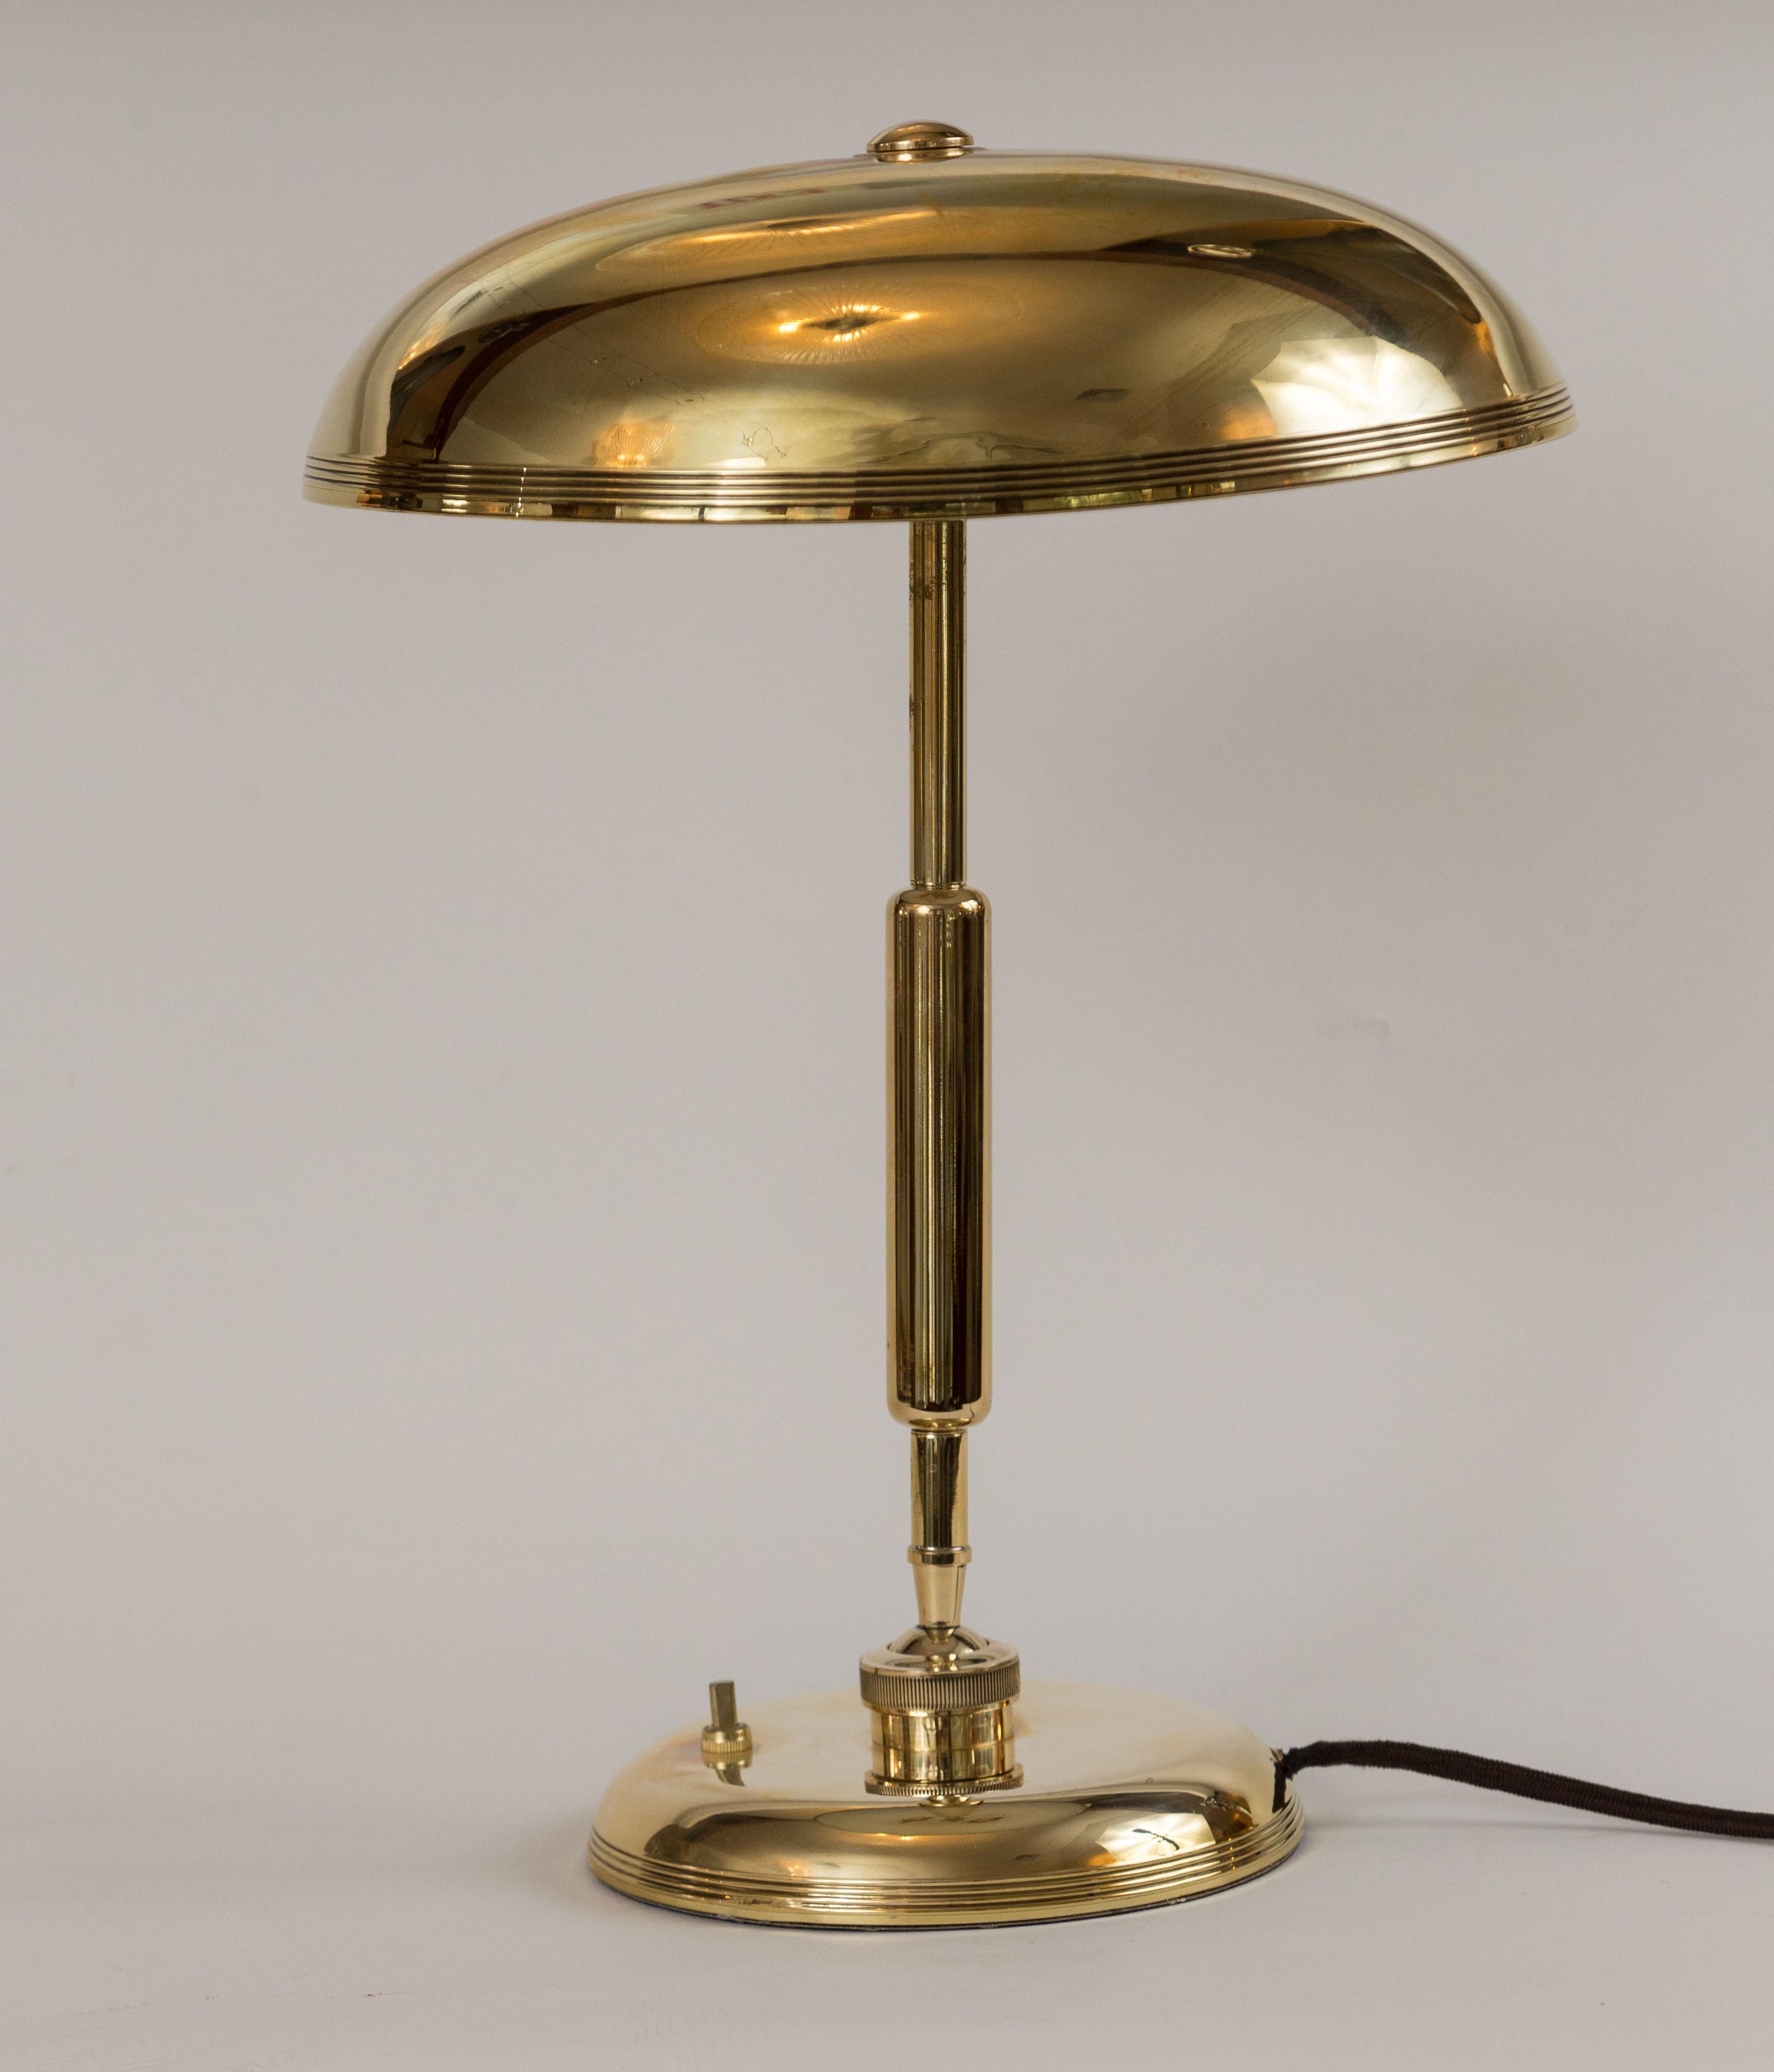 Eine vollständig restaurierte Messing-Tischlampe des Architekten Giovanni Michelucci, hergestellt von Lariolux.  Das Design der Lampe hatte eine ausgeklügelte Funktionalität des Designs, da es aus zwei rotierenden  eine an der Basis des Stiels und